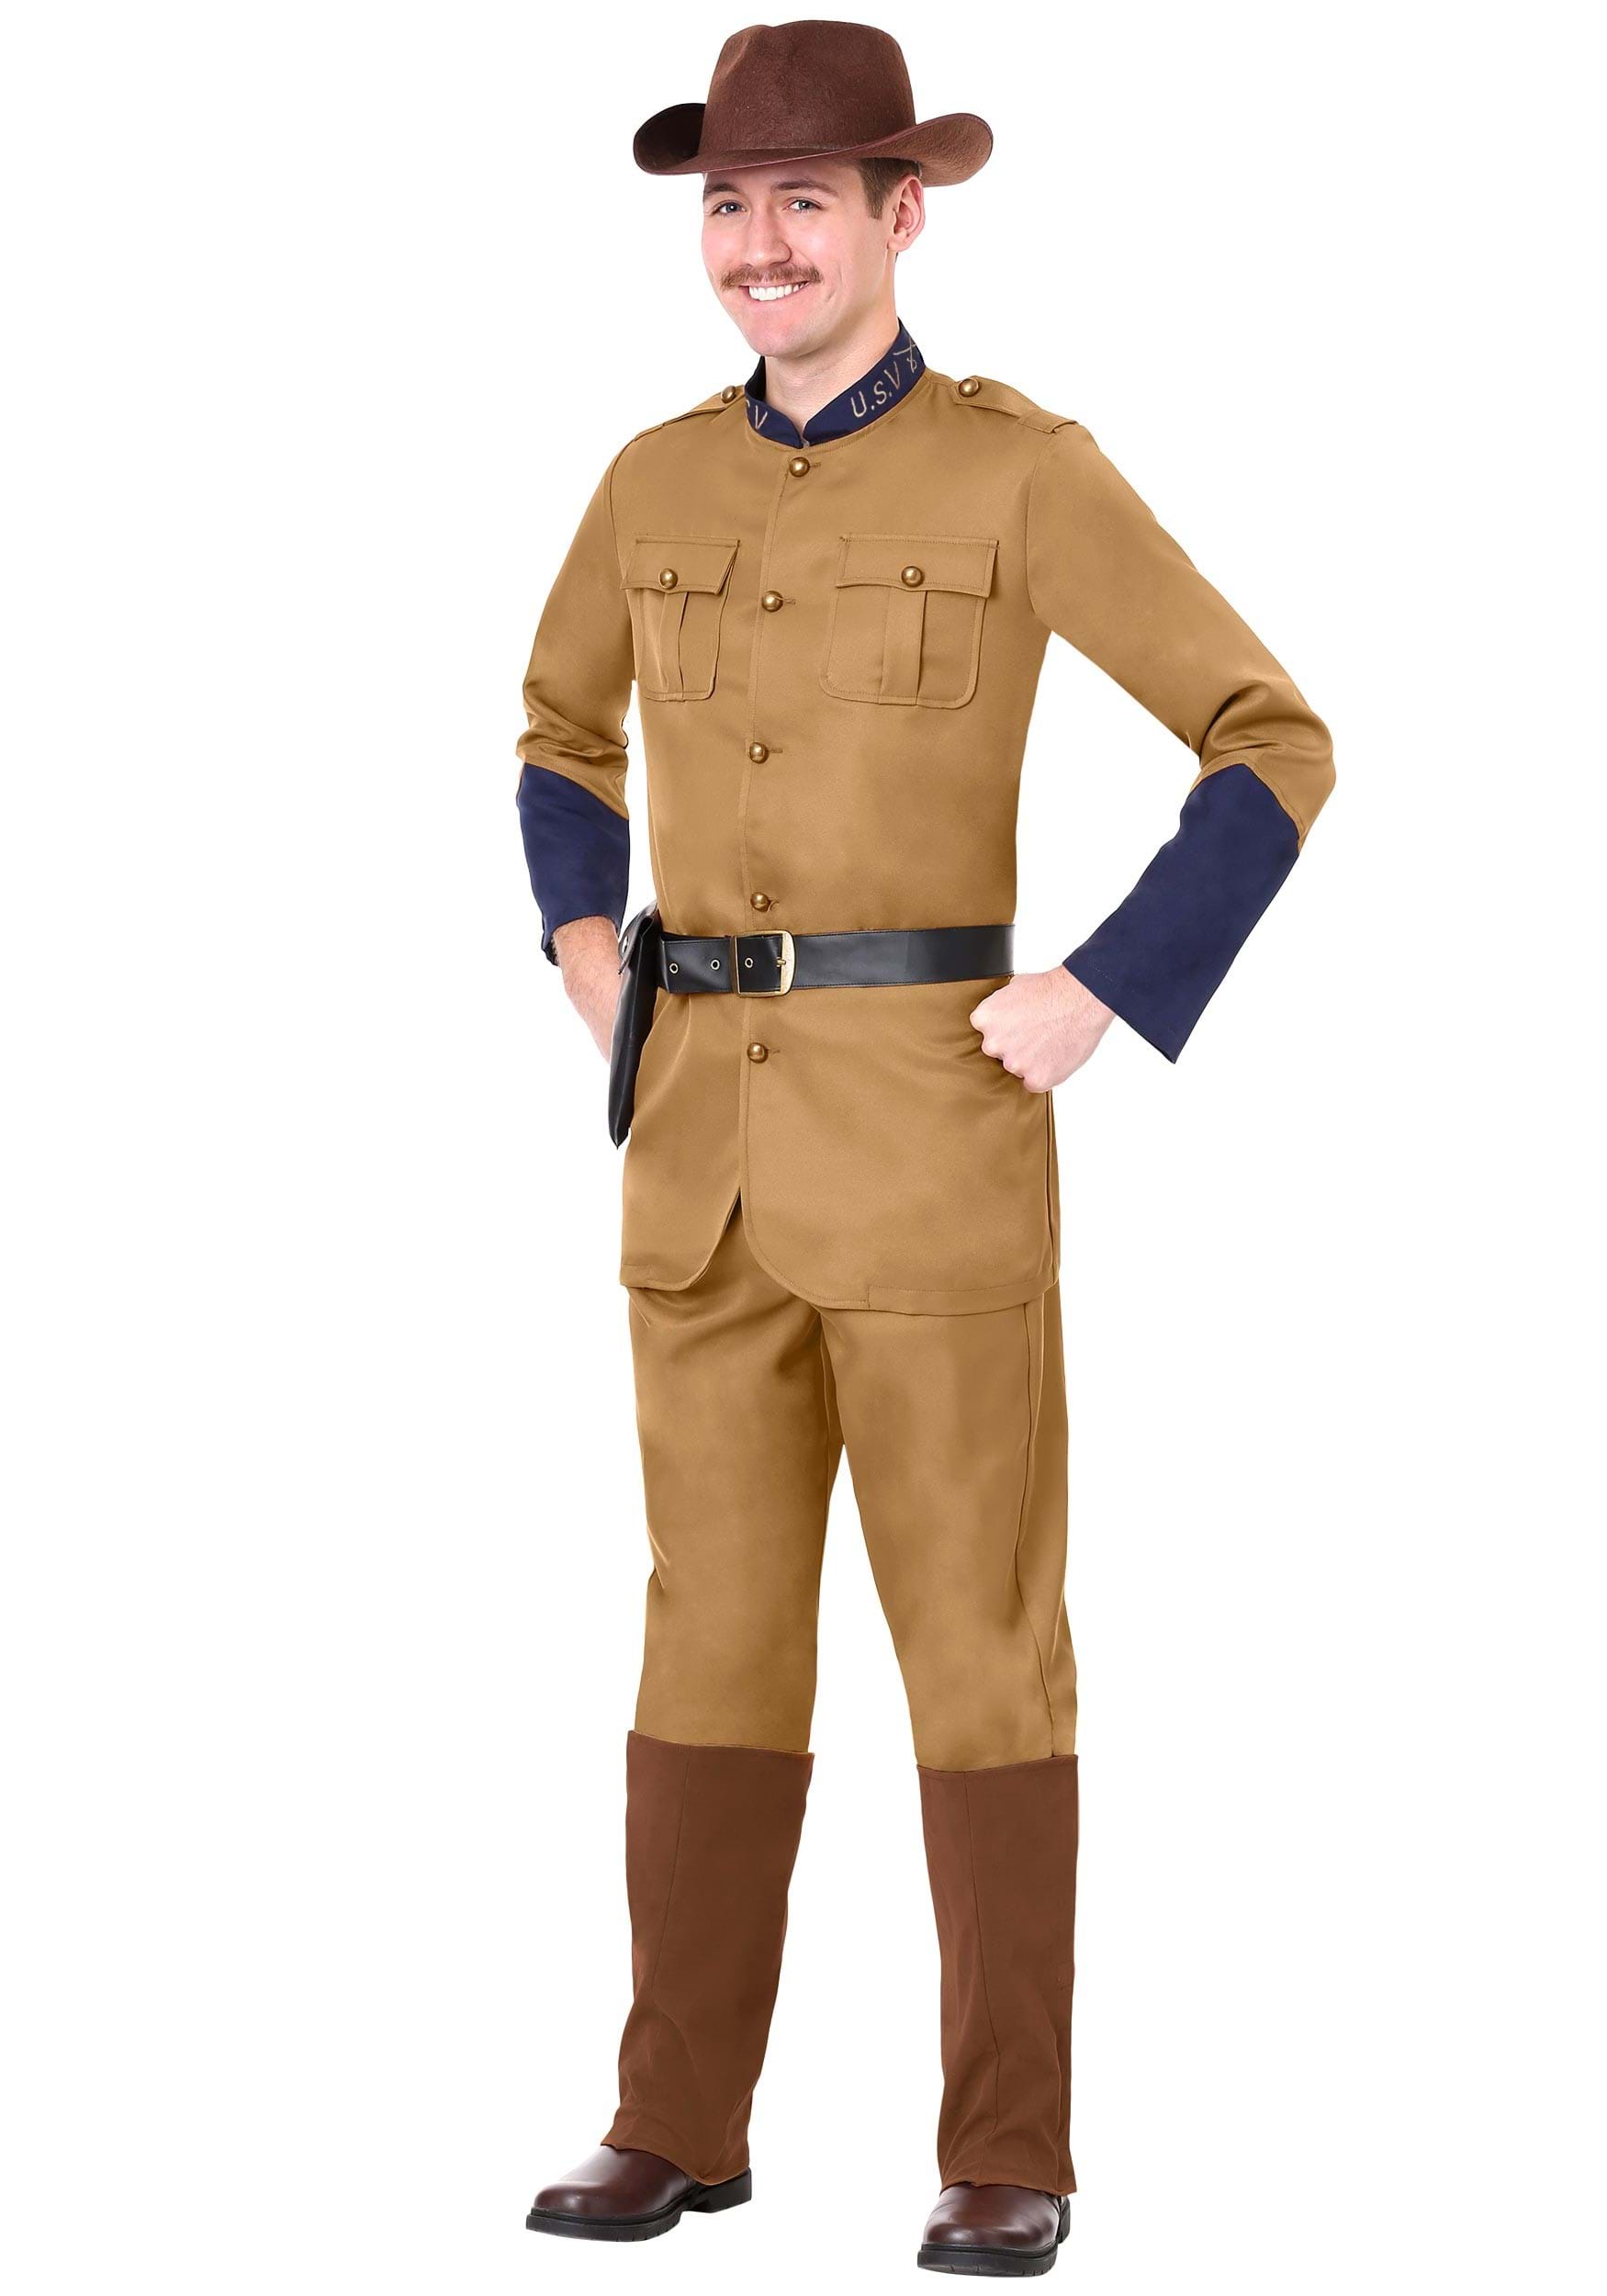 Officer Teddy Roosevelt Fancy Dress Costume For Men